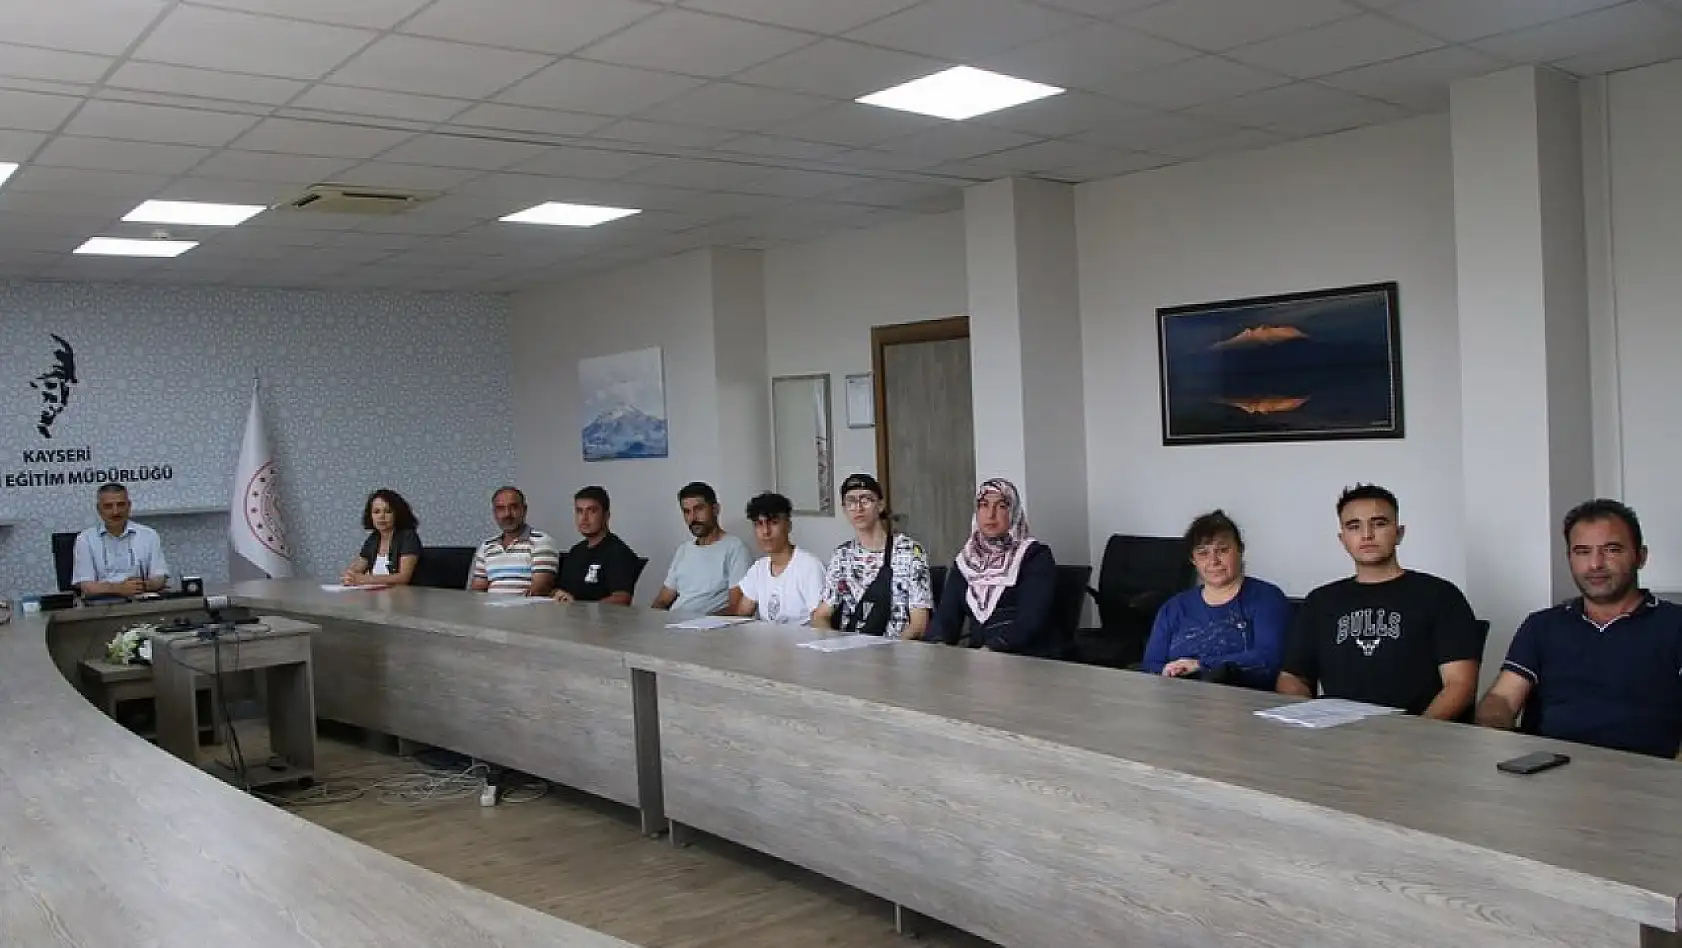 Kayseri'den 1 öğretmen ve 6 öğrenci gidiyor!